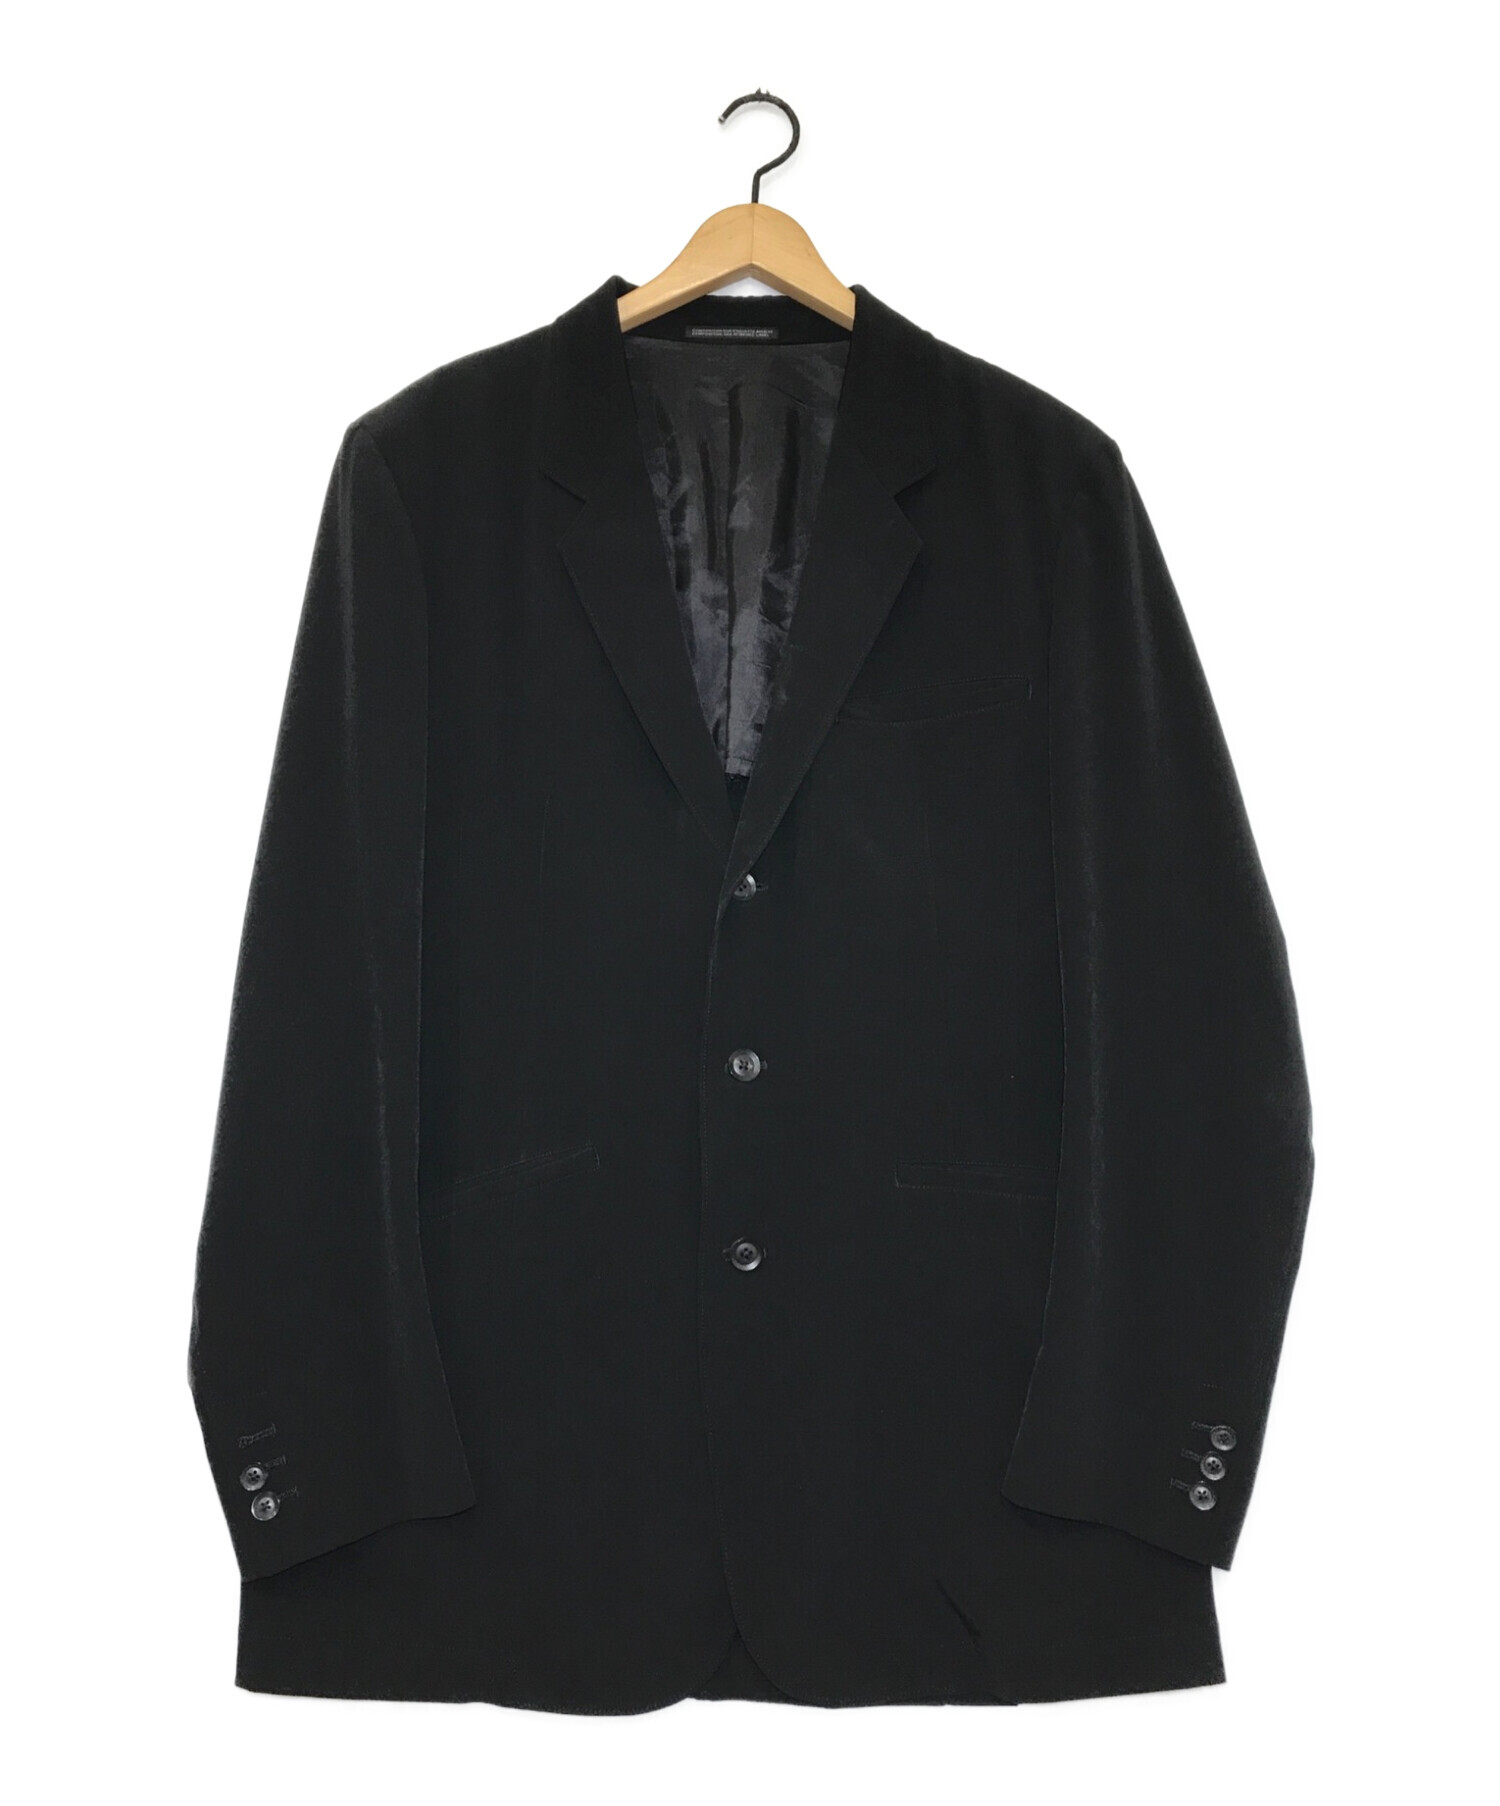 Yohji Yamamoto pour homme (ヨウジヤマモトプールオム) LOOK16ジャケット ブラック サイズ:3